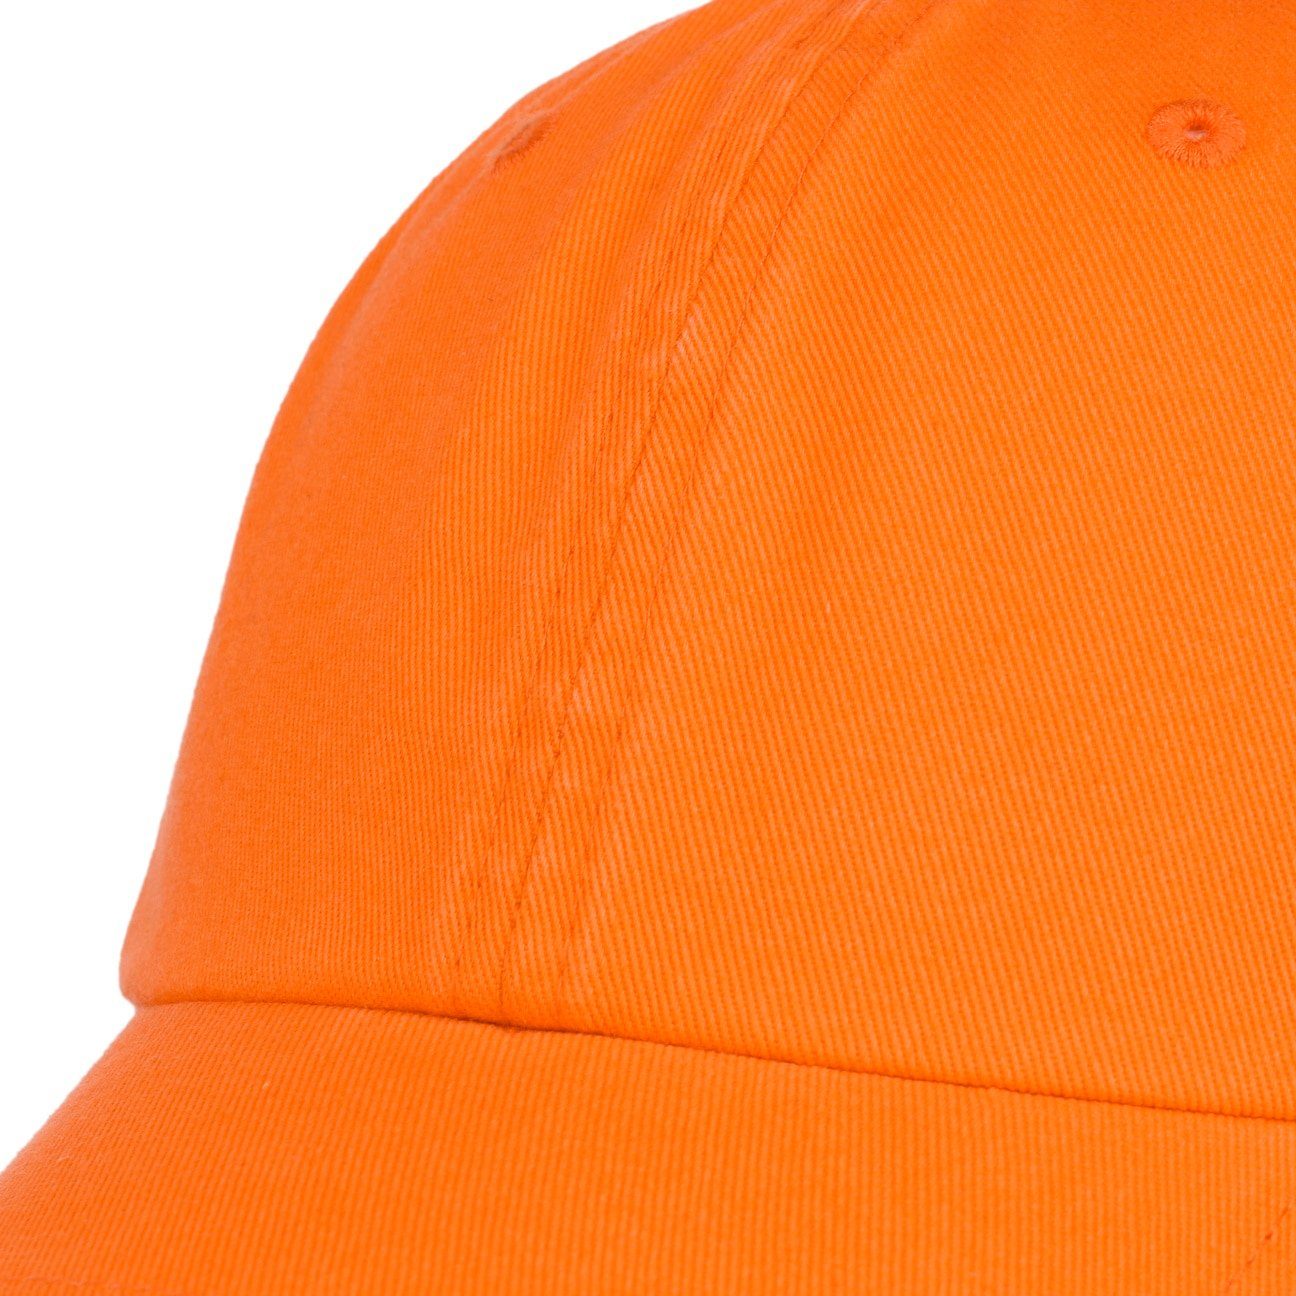 Stetson Baseball Cap (1-St) Basecap orange Metallschnalle